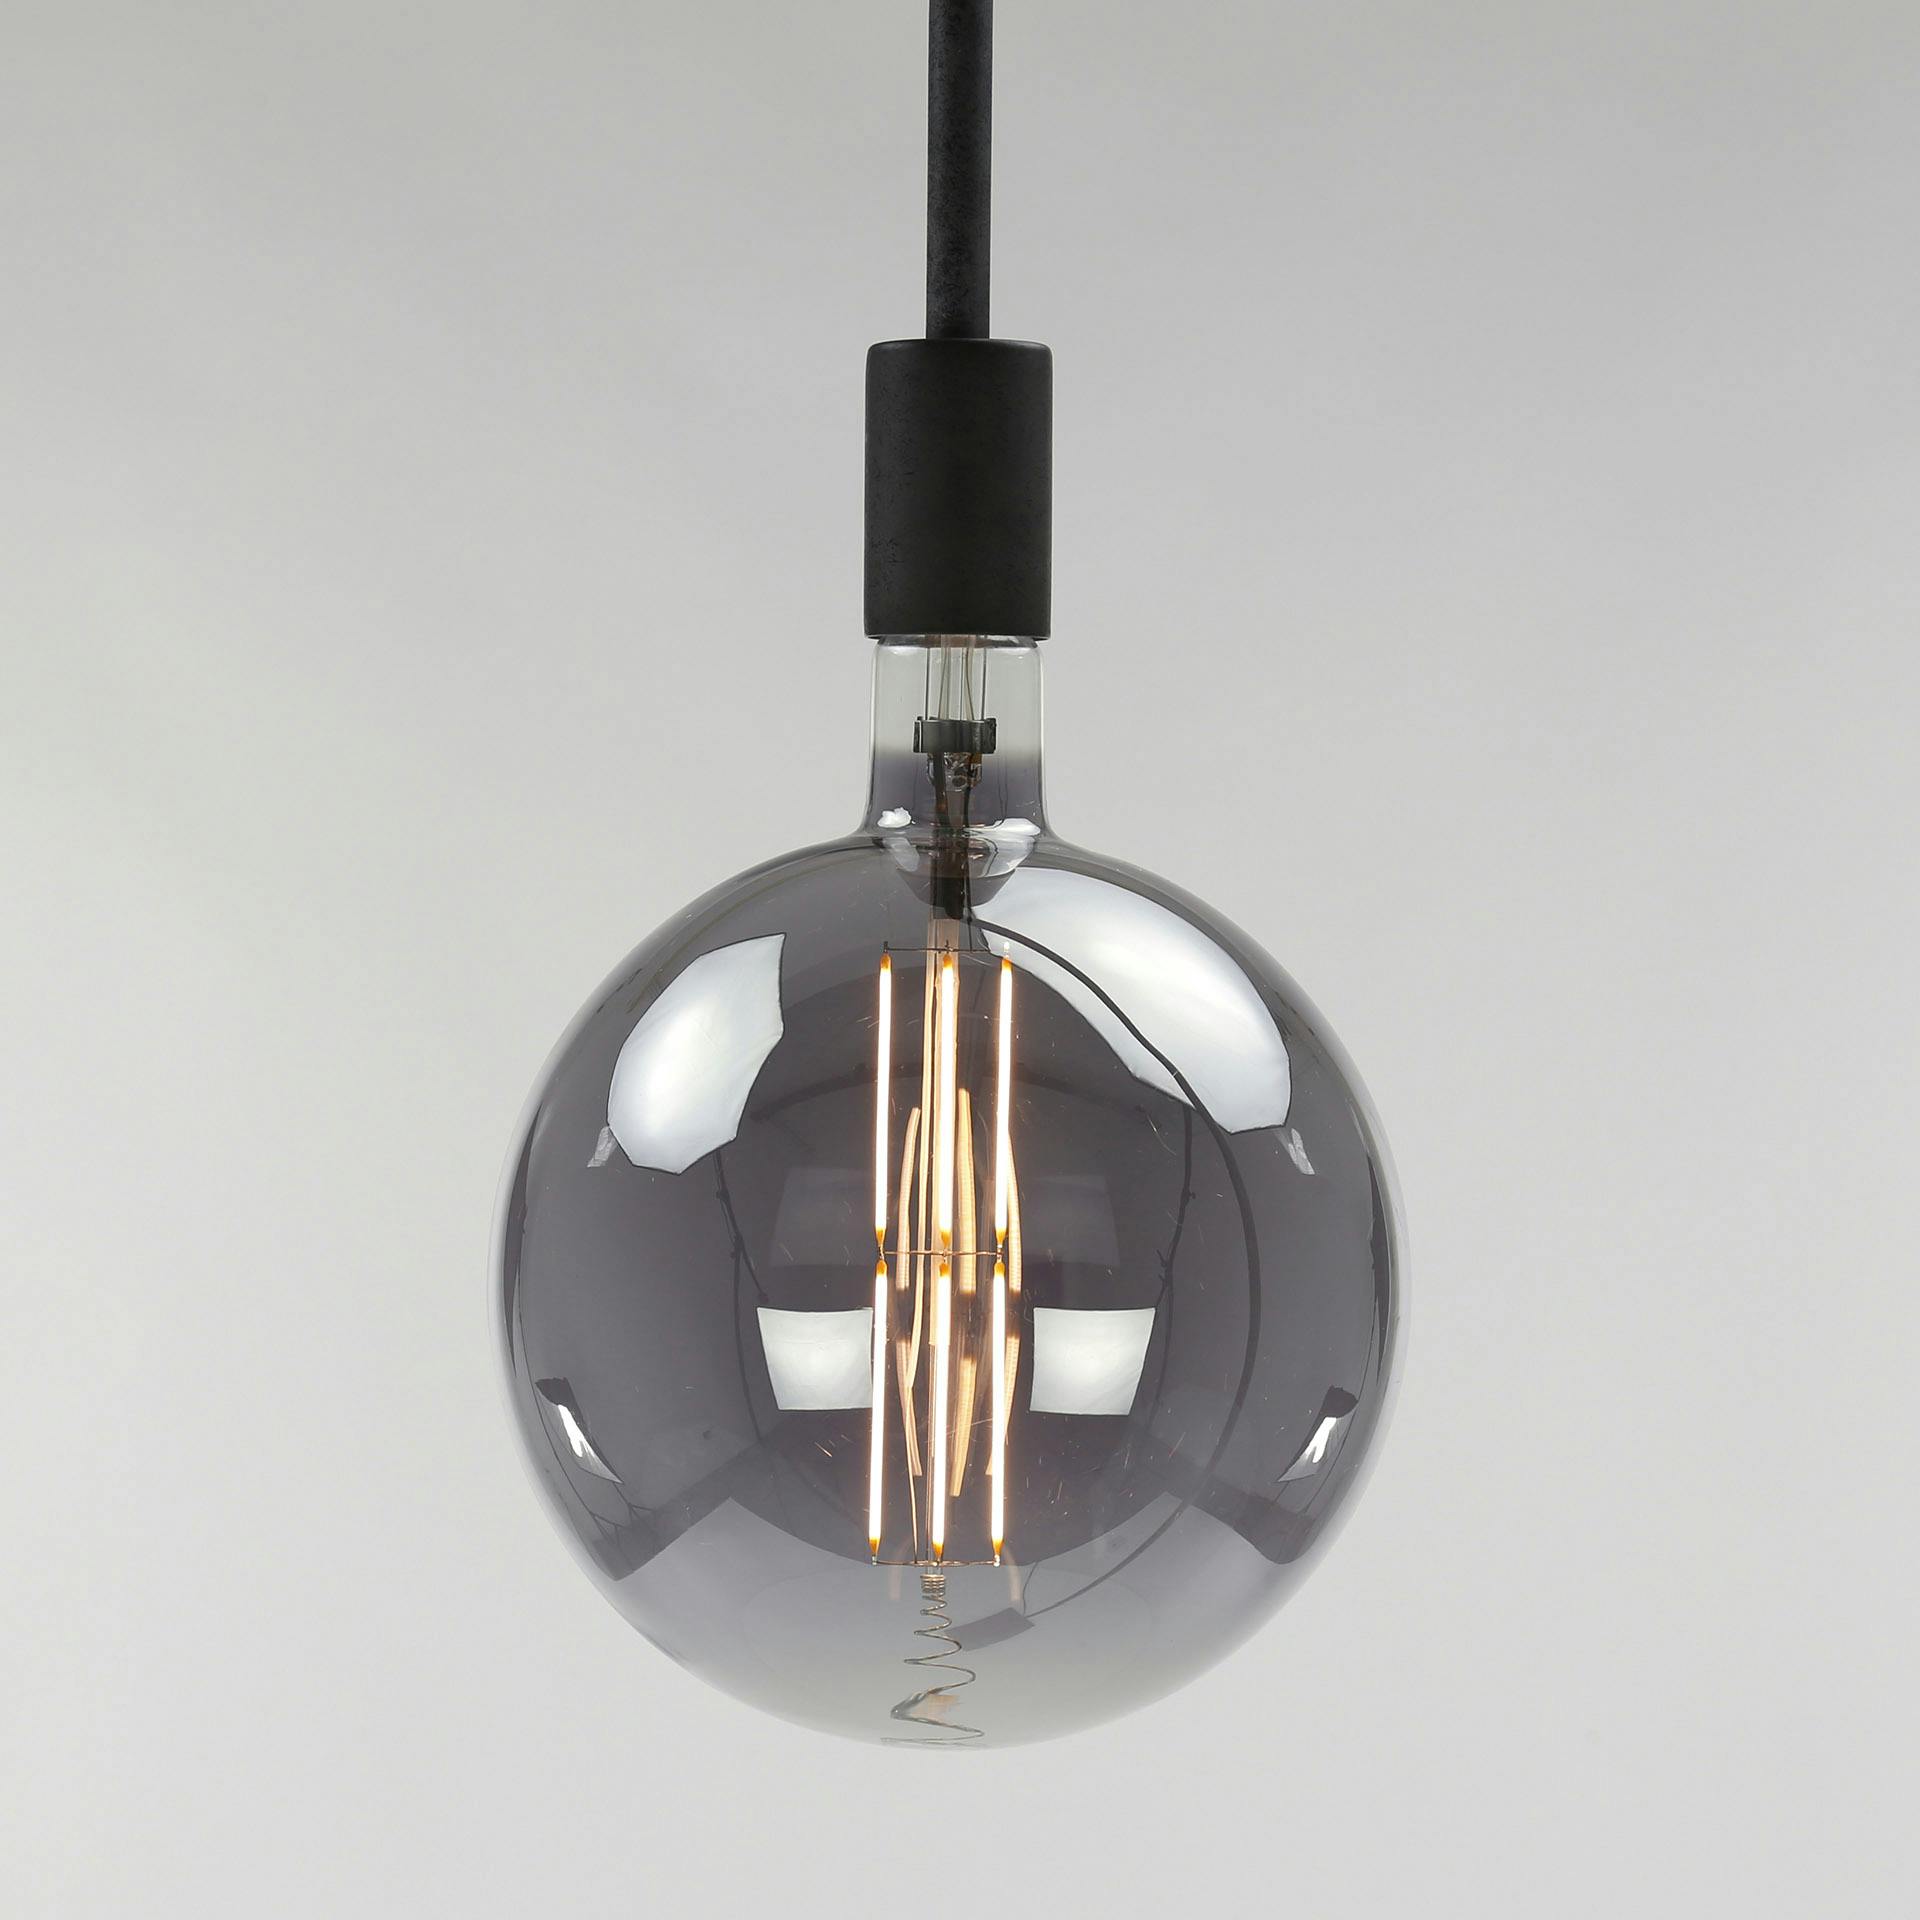 Ampoule E27 LED Filament Dimmable Globe effet fumée